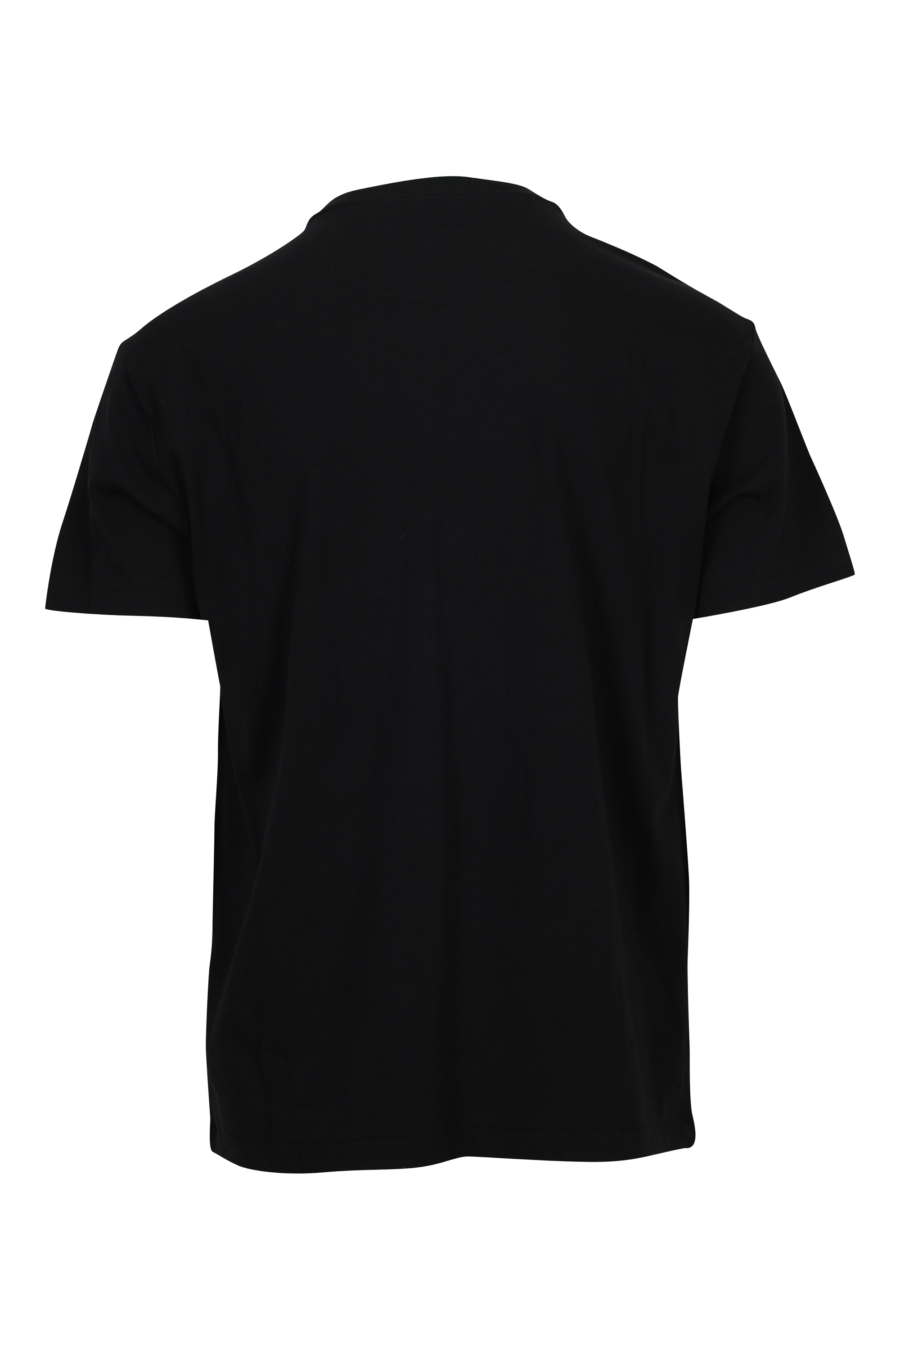 Camiseta negra con maxilogo "polo" en blanco - 3616535662735 1